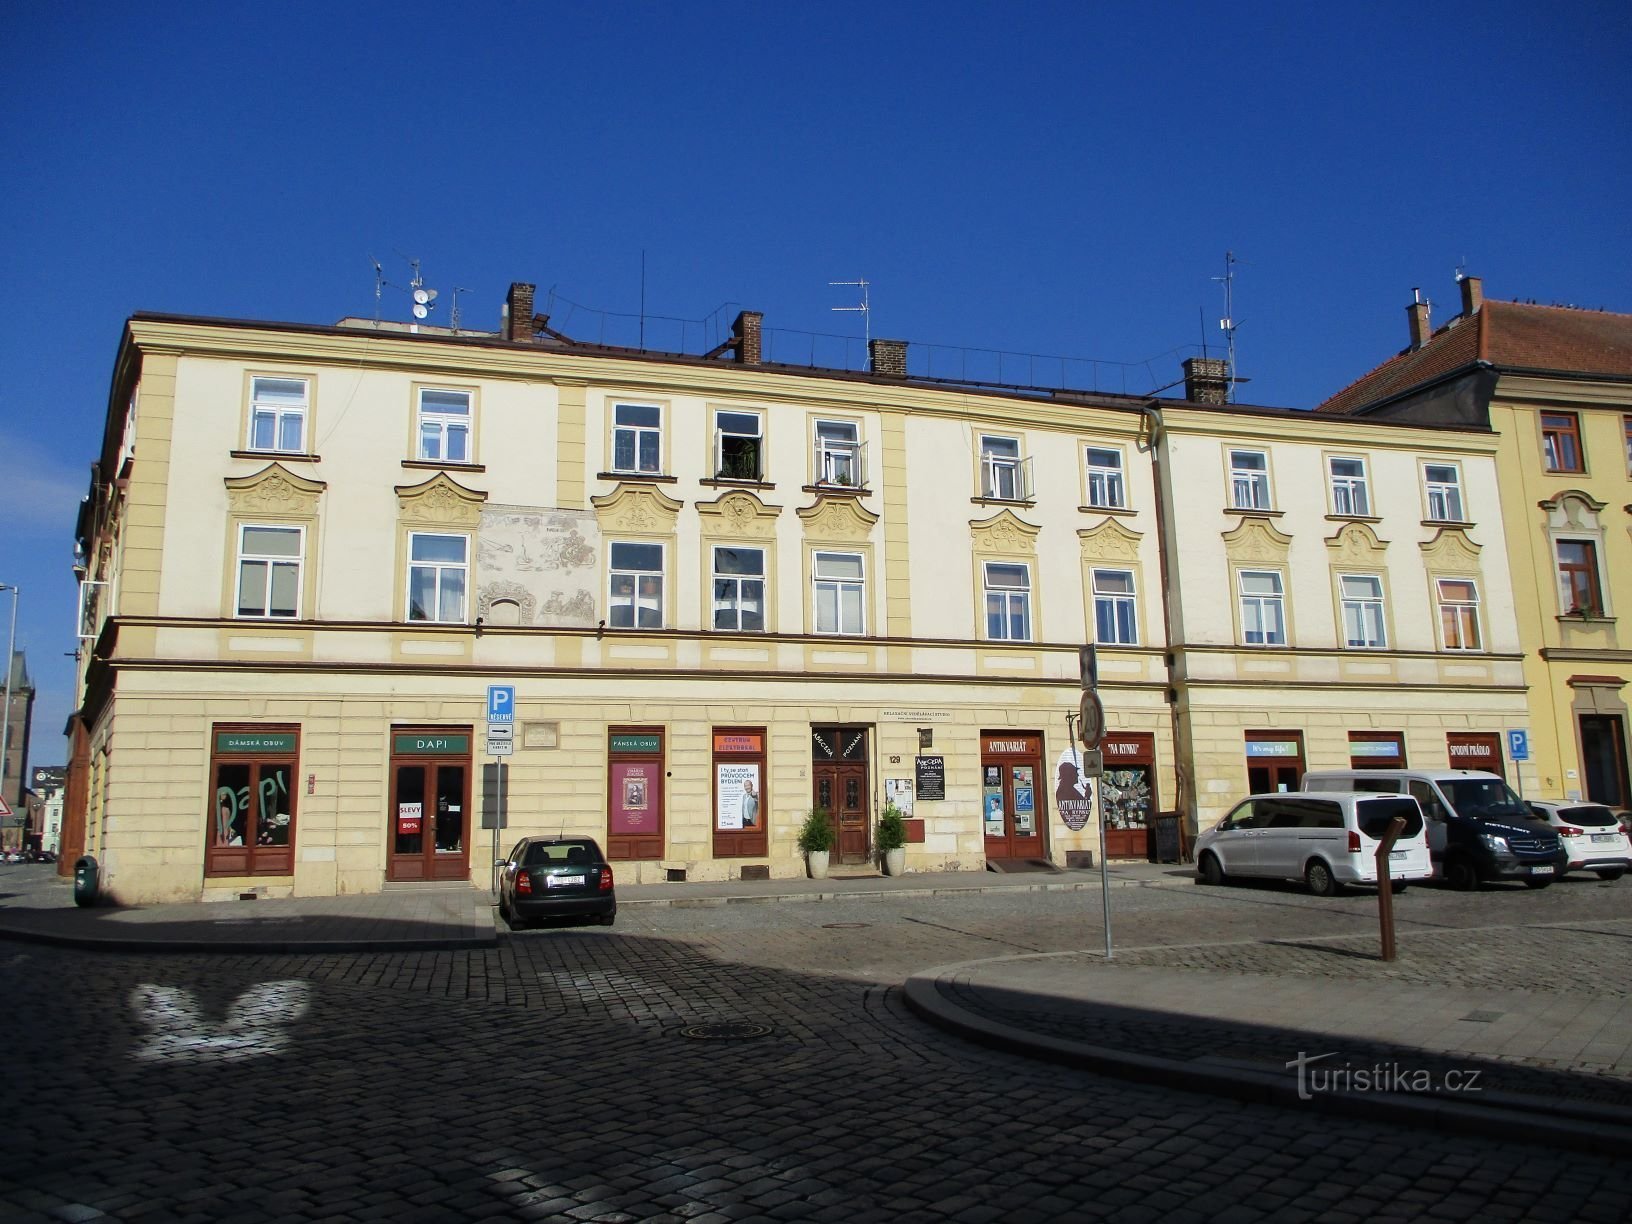 Malé náměstí nr. 129 (Hradec Králové, 6.7.2019. april XNUMX)